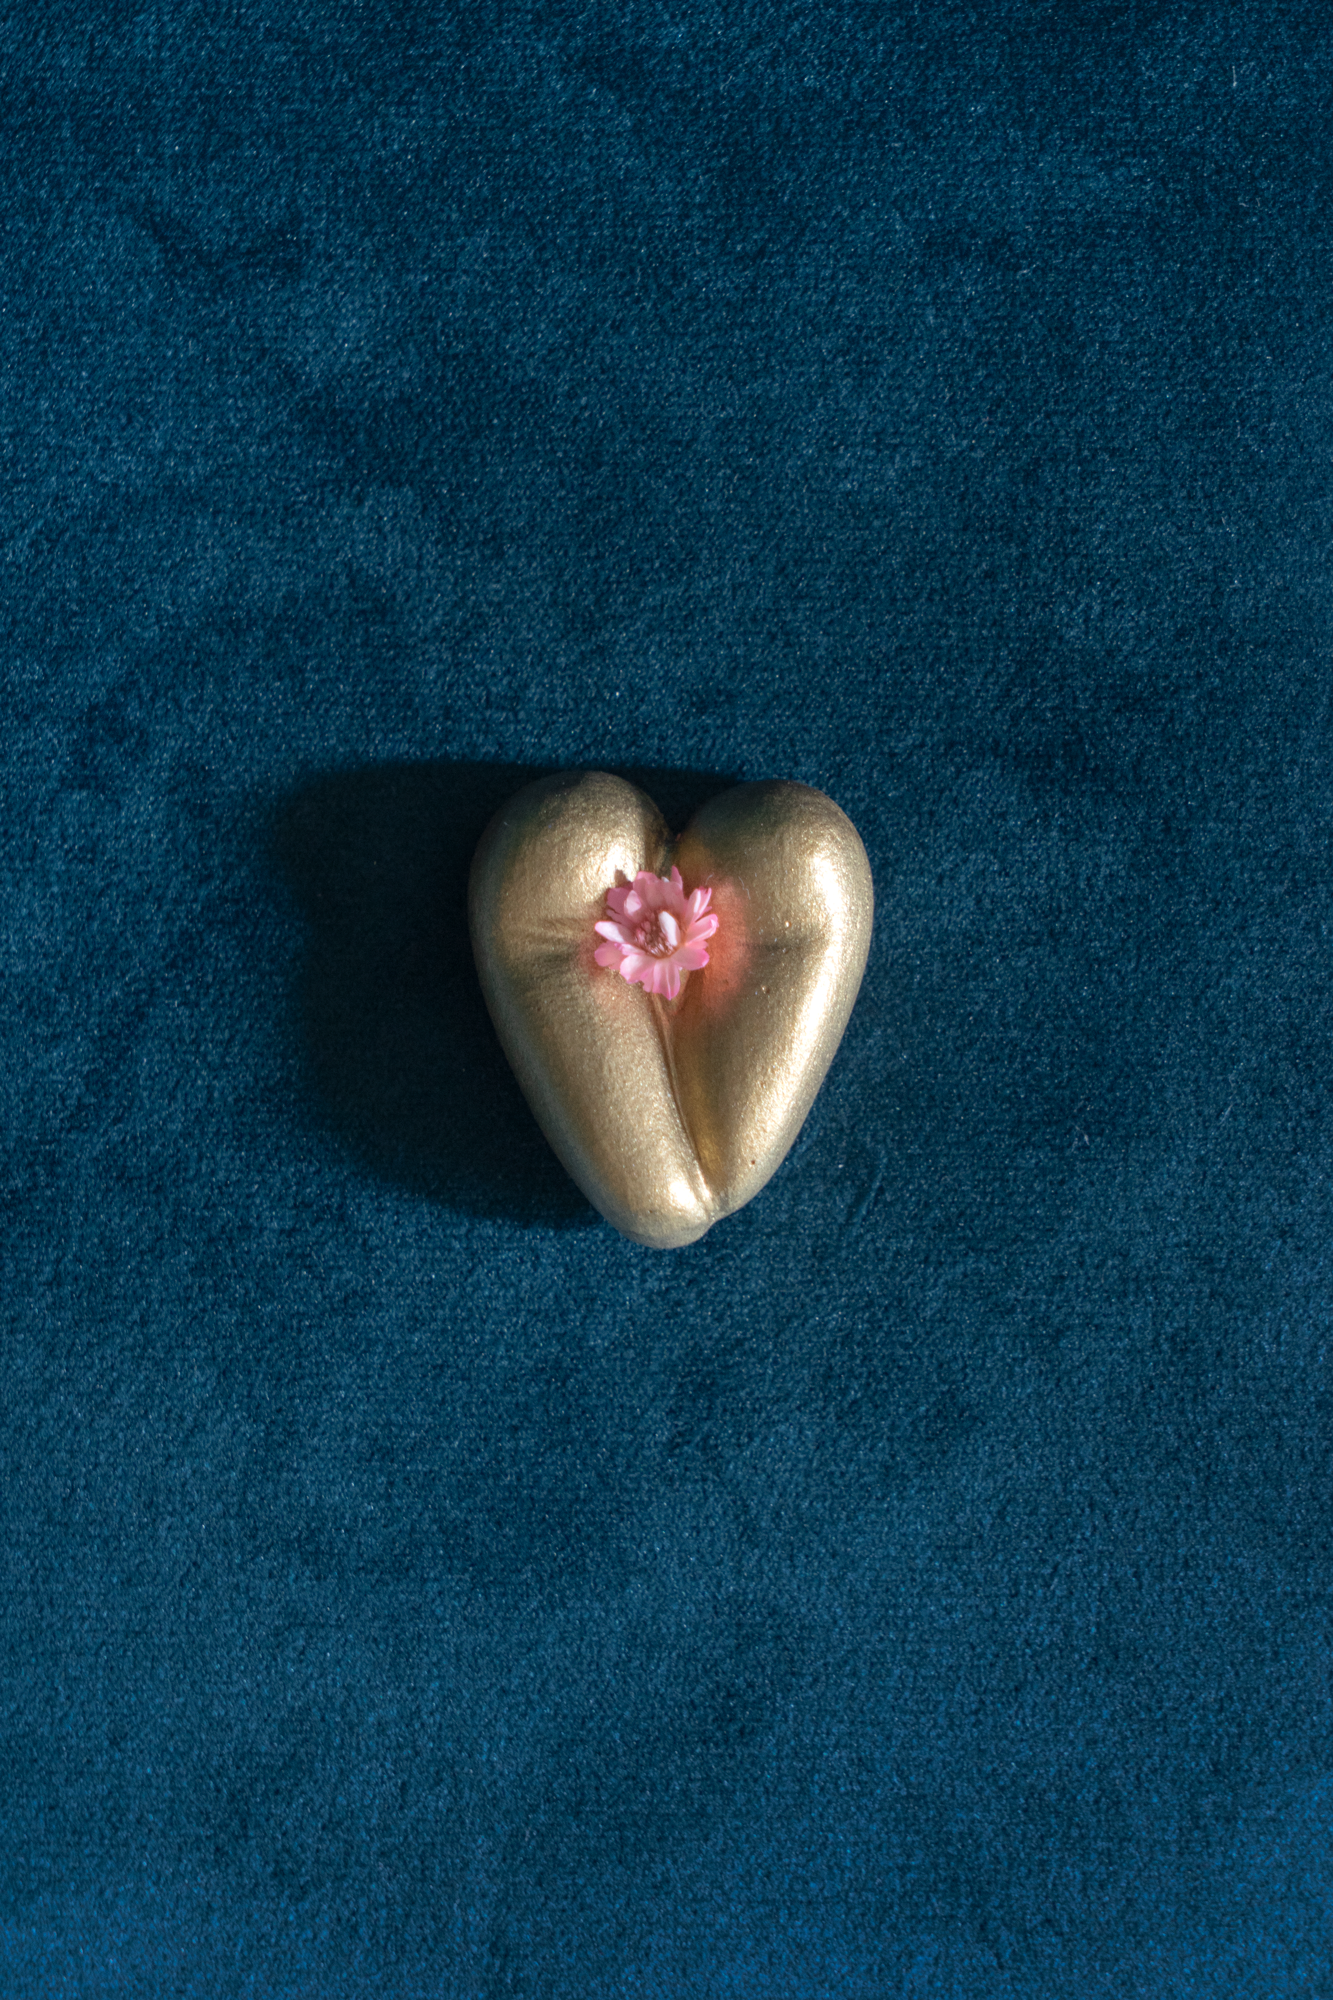 Coeur à nu de Maison Tessier or, fesses en forme de coeur avec petites fleurs séchées, sur tissus velour émeraude